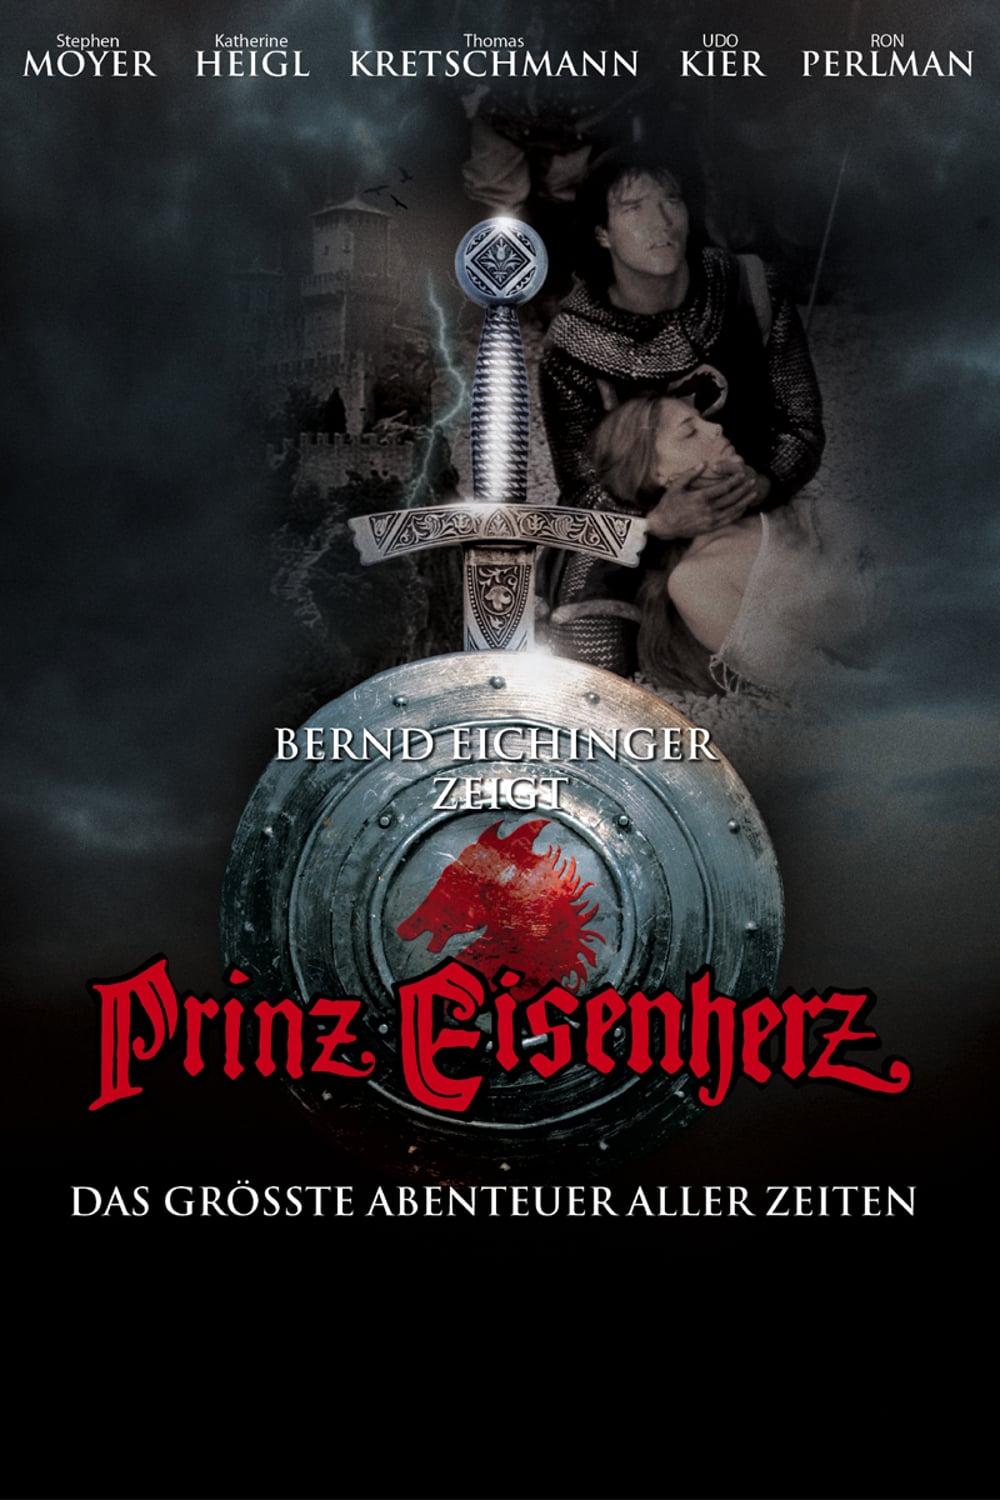 Plakat von "Prinz Eisenherz"